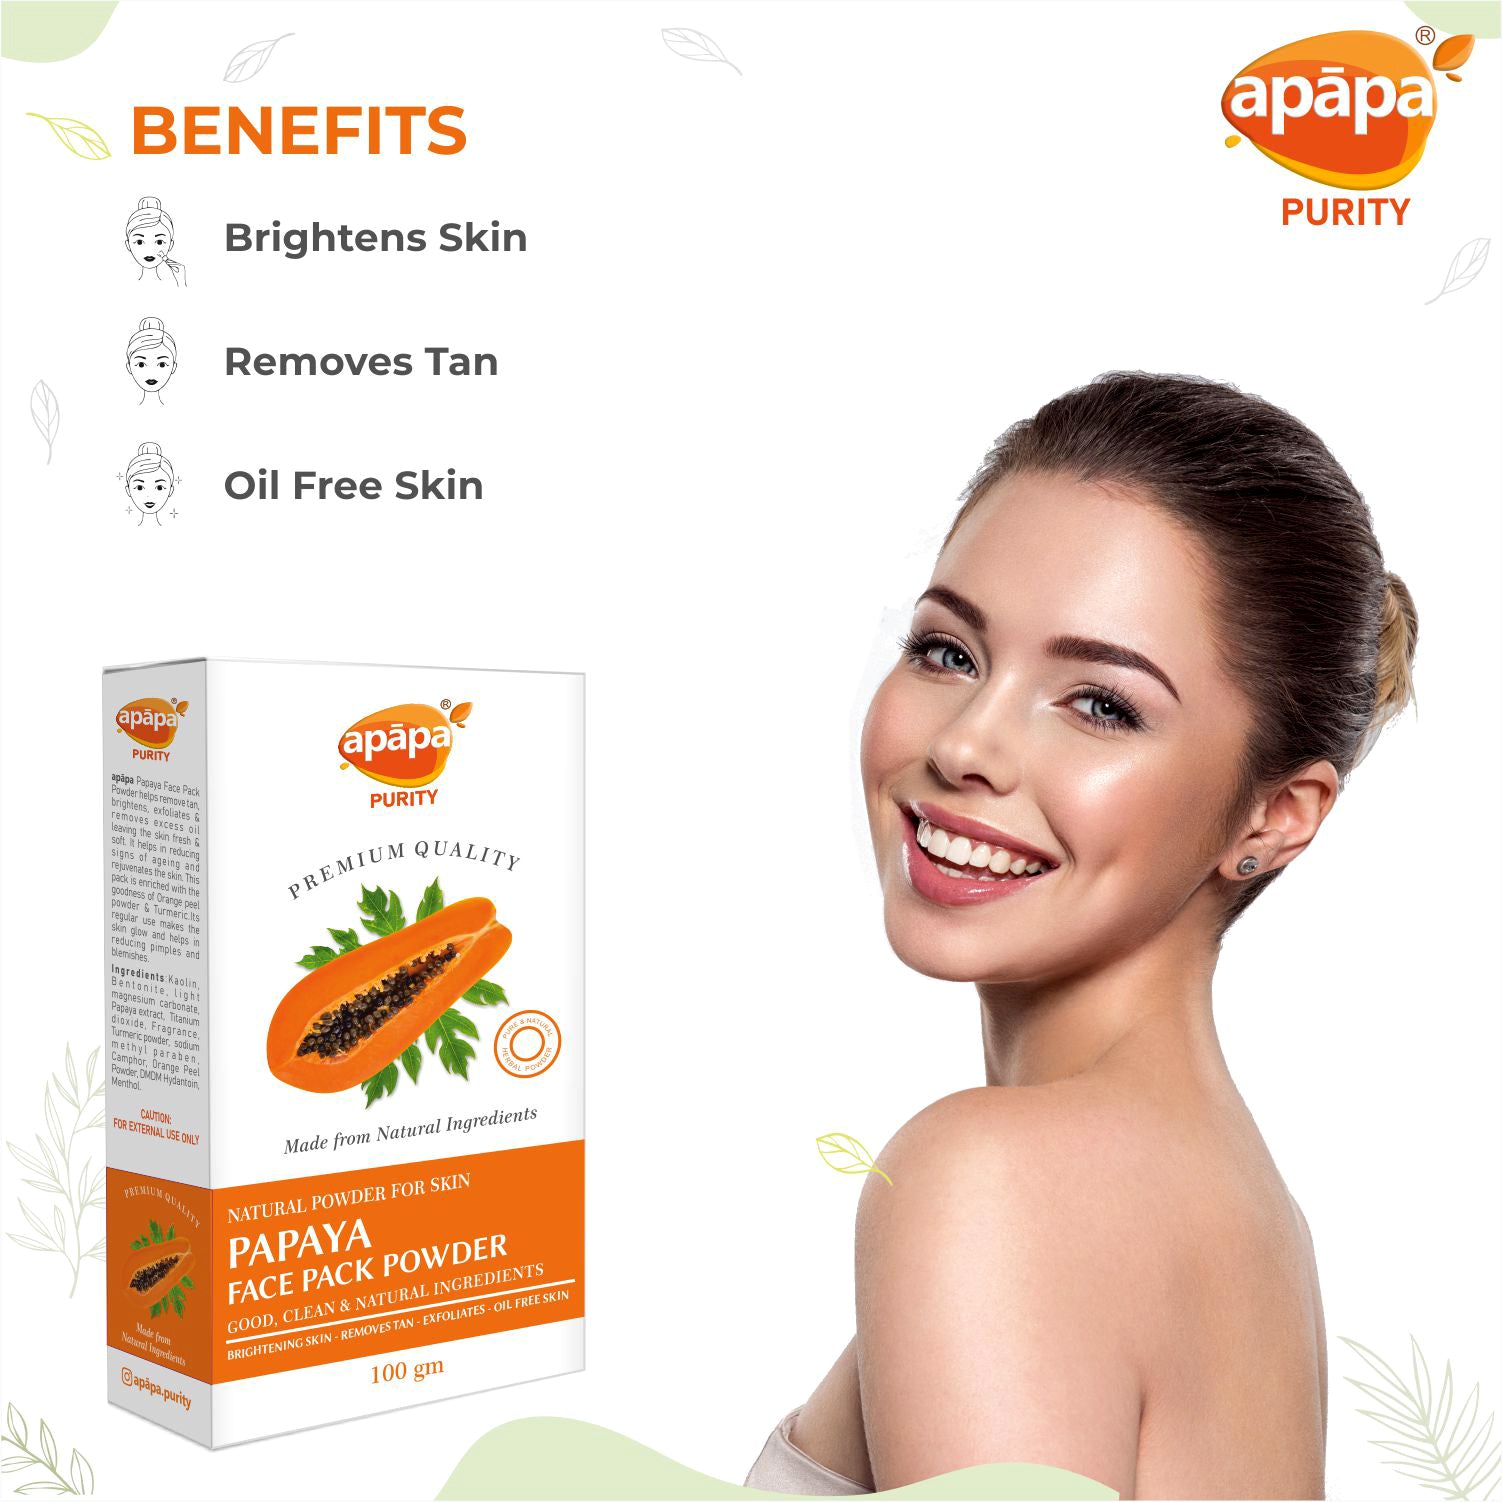 APĀPA Brightening Papaya Face Pack Powder